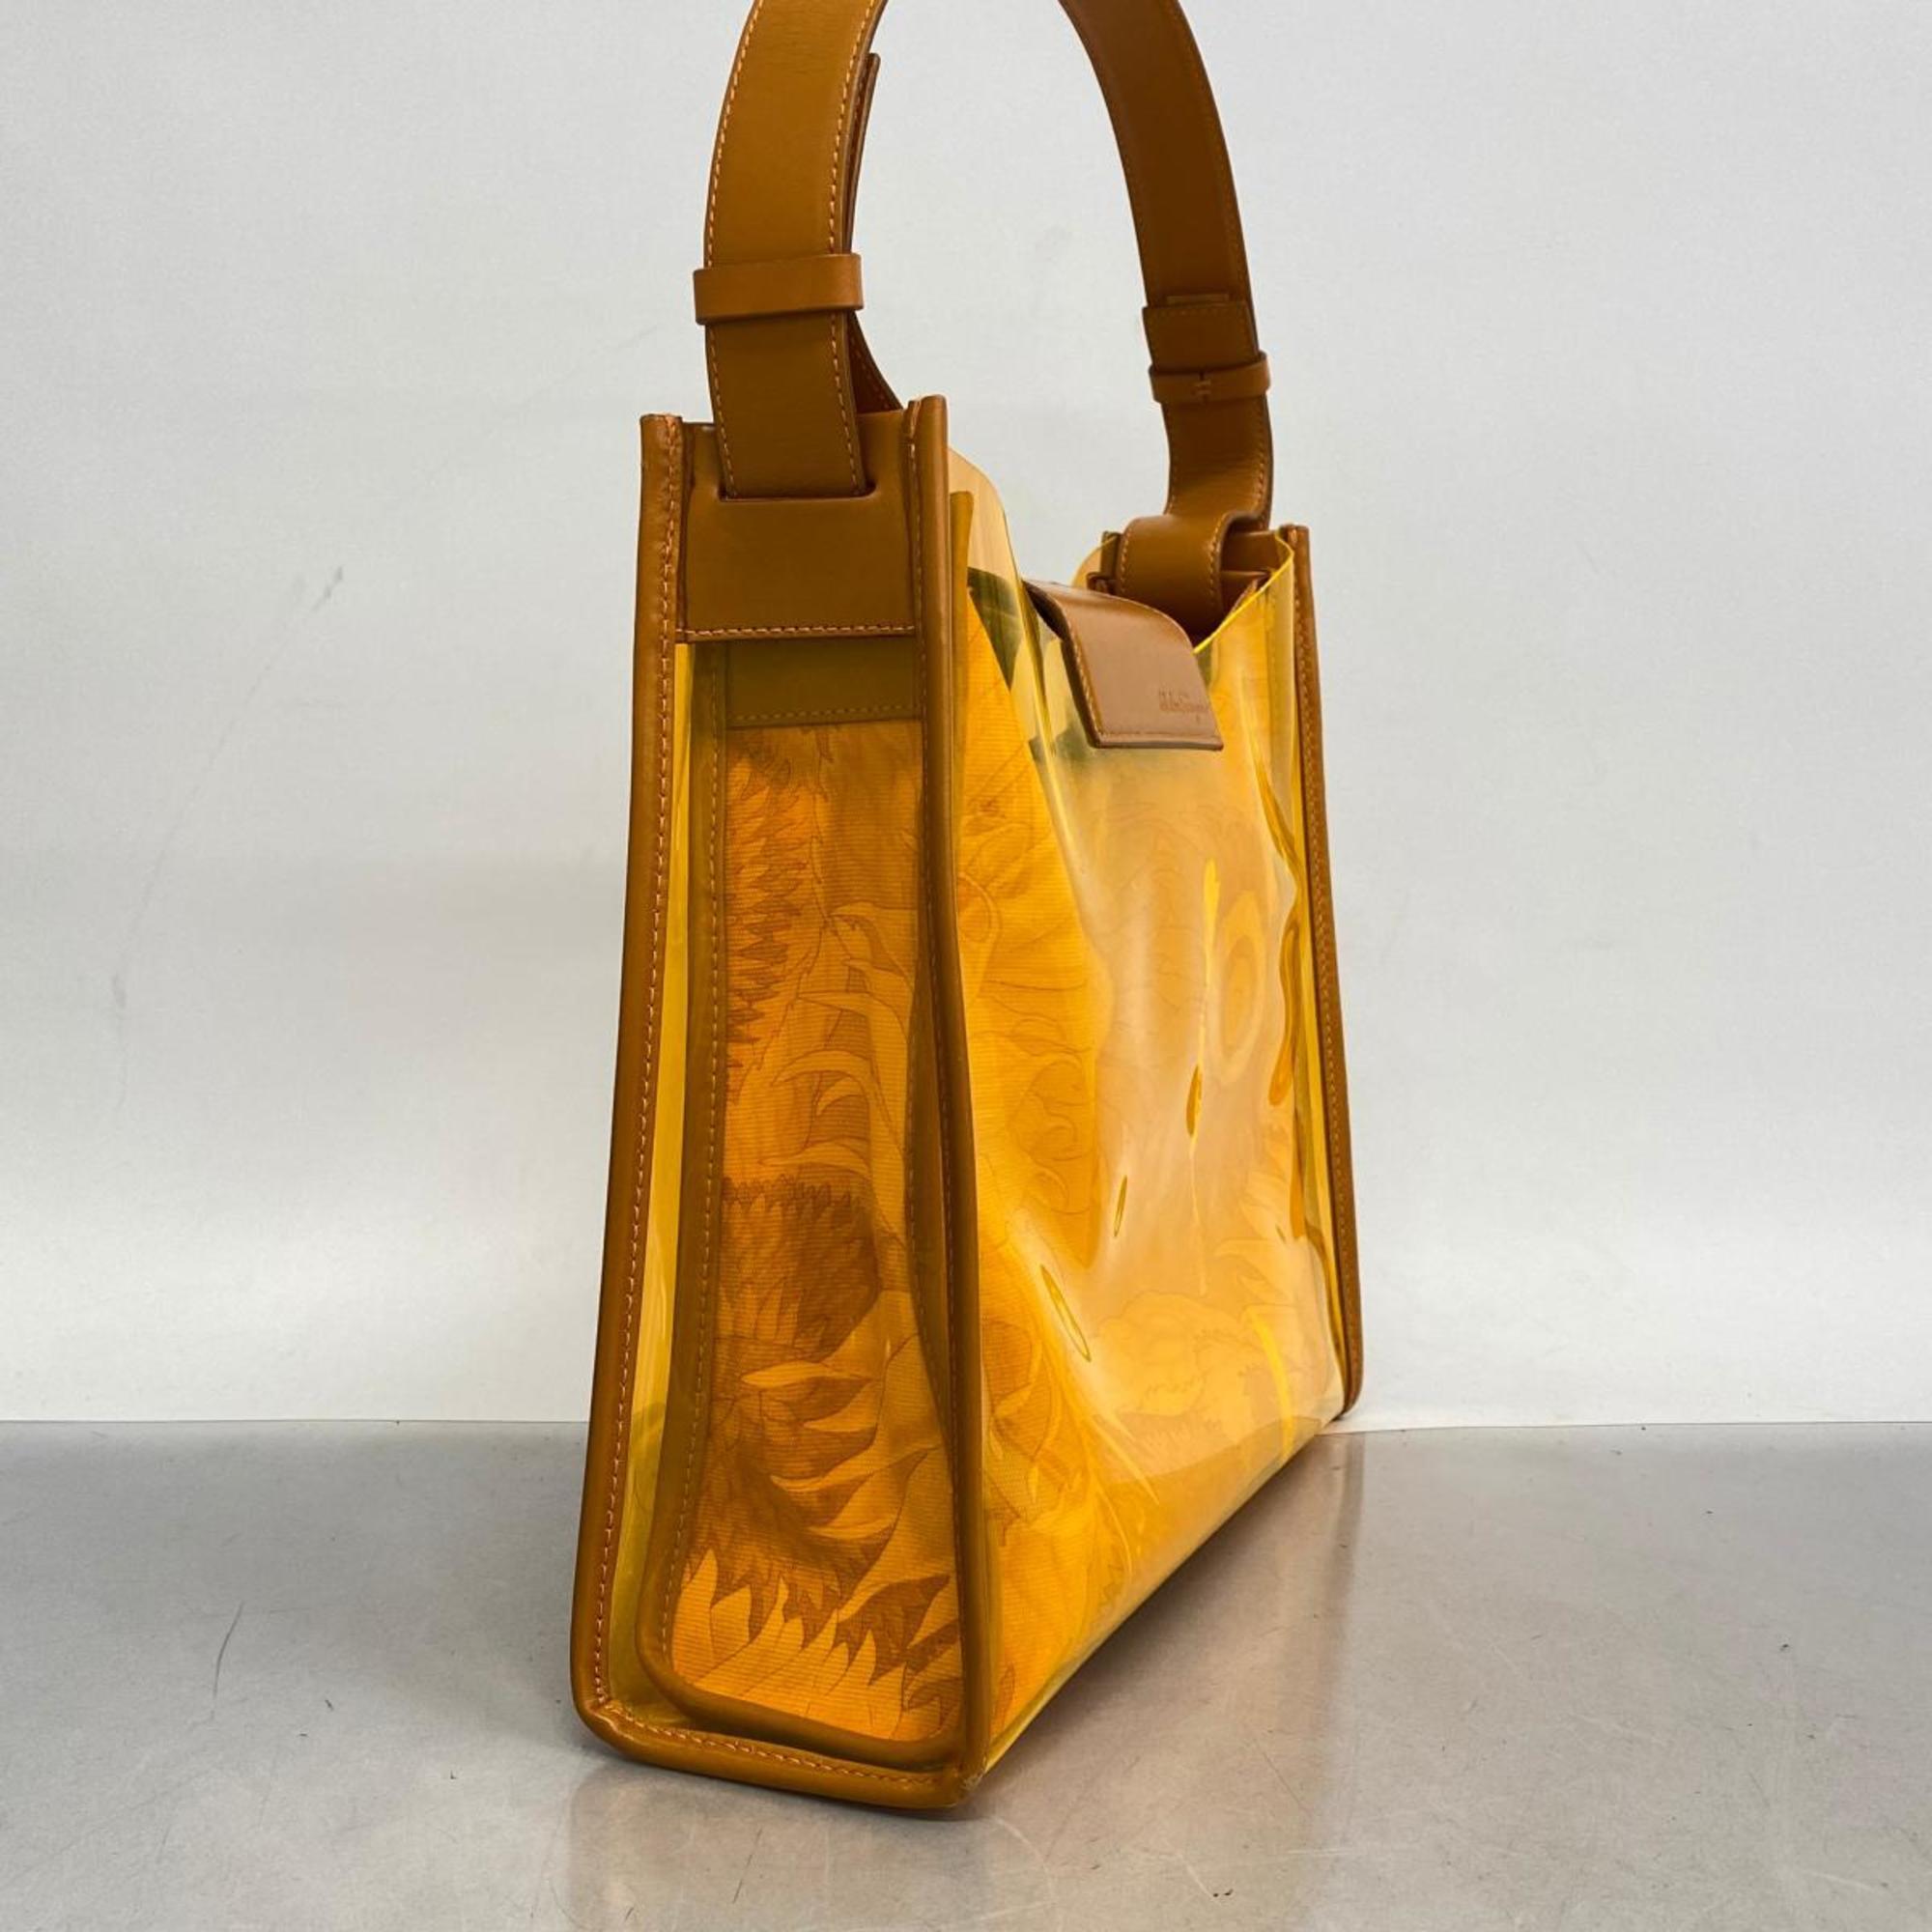 Salvatore Ferragamo shoulder bag leather vinyl orange ladies